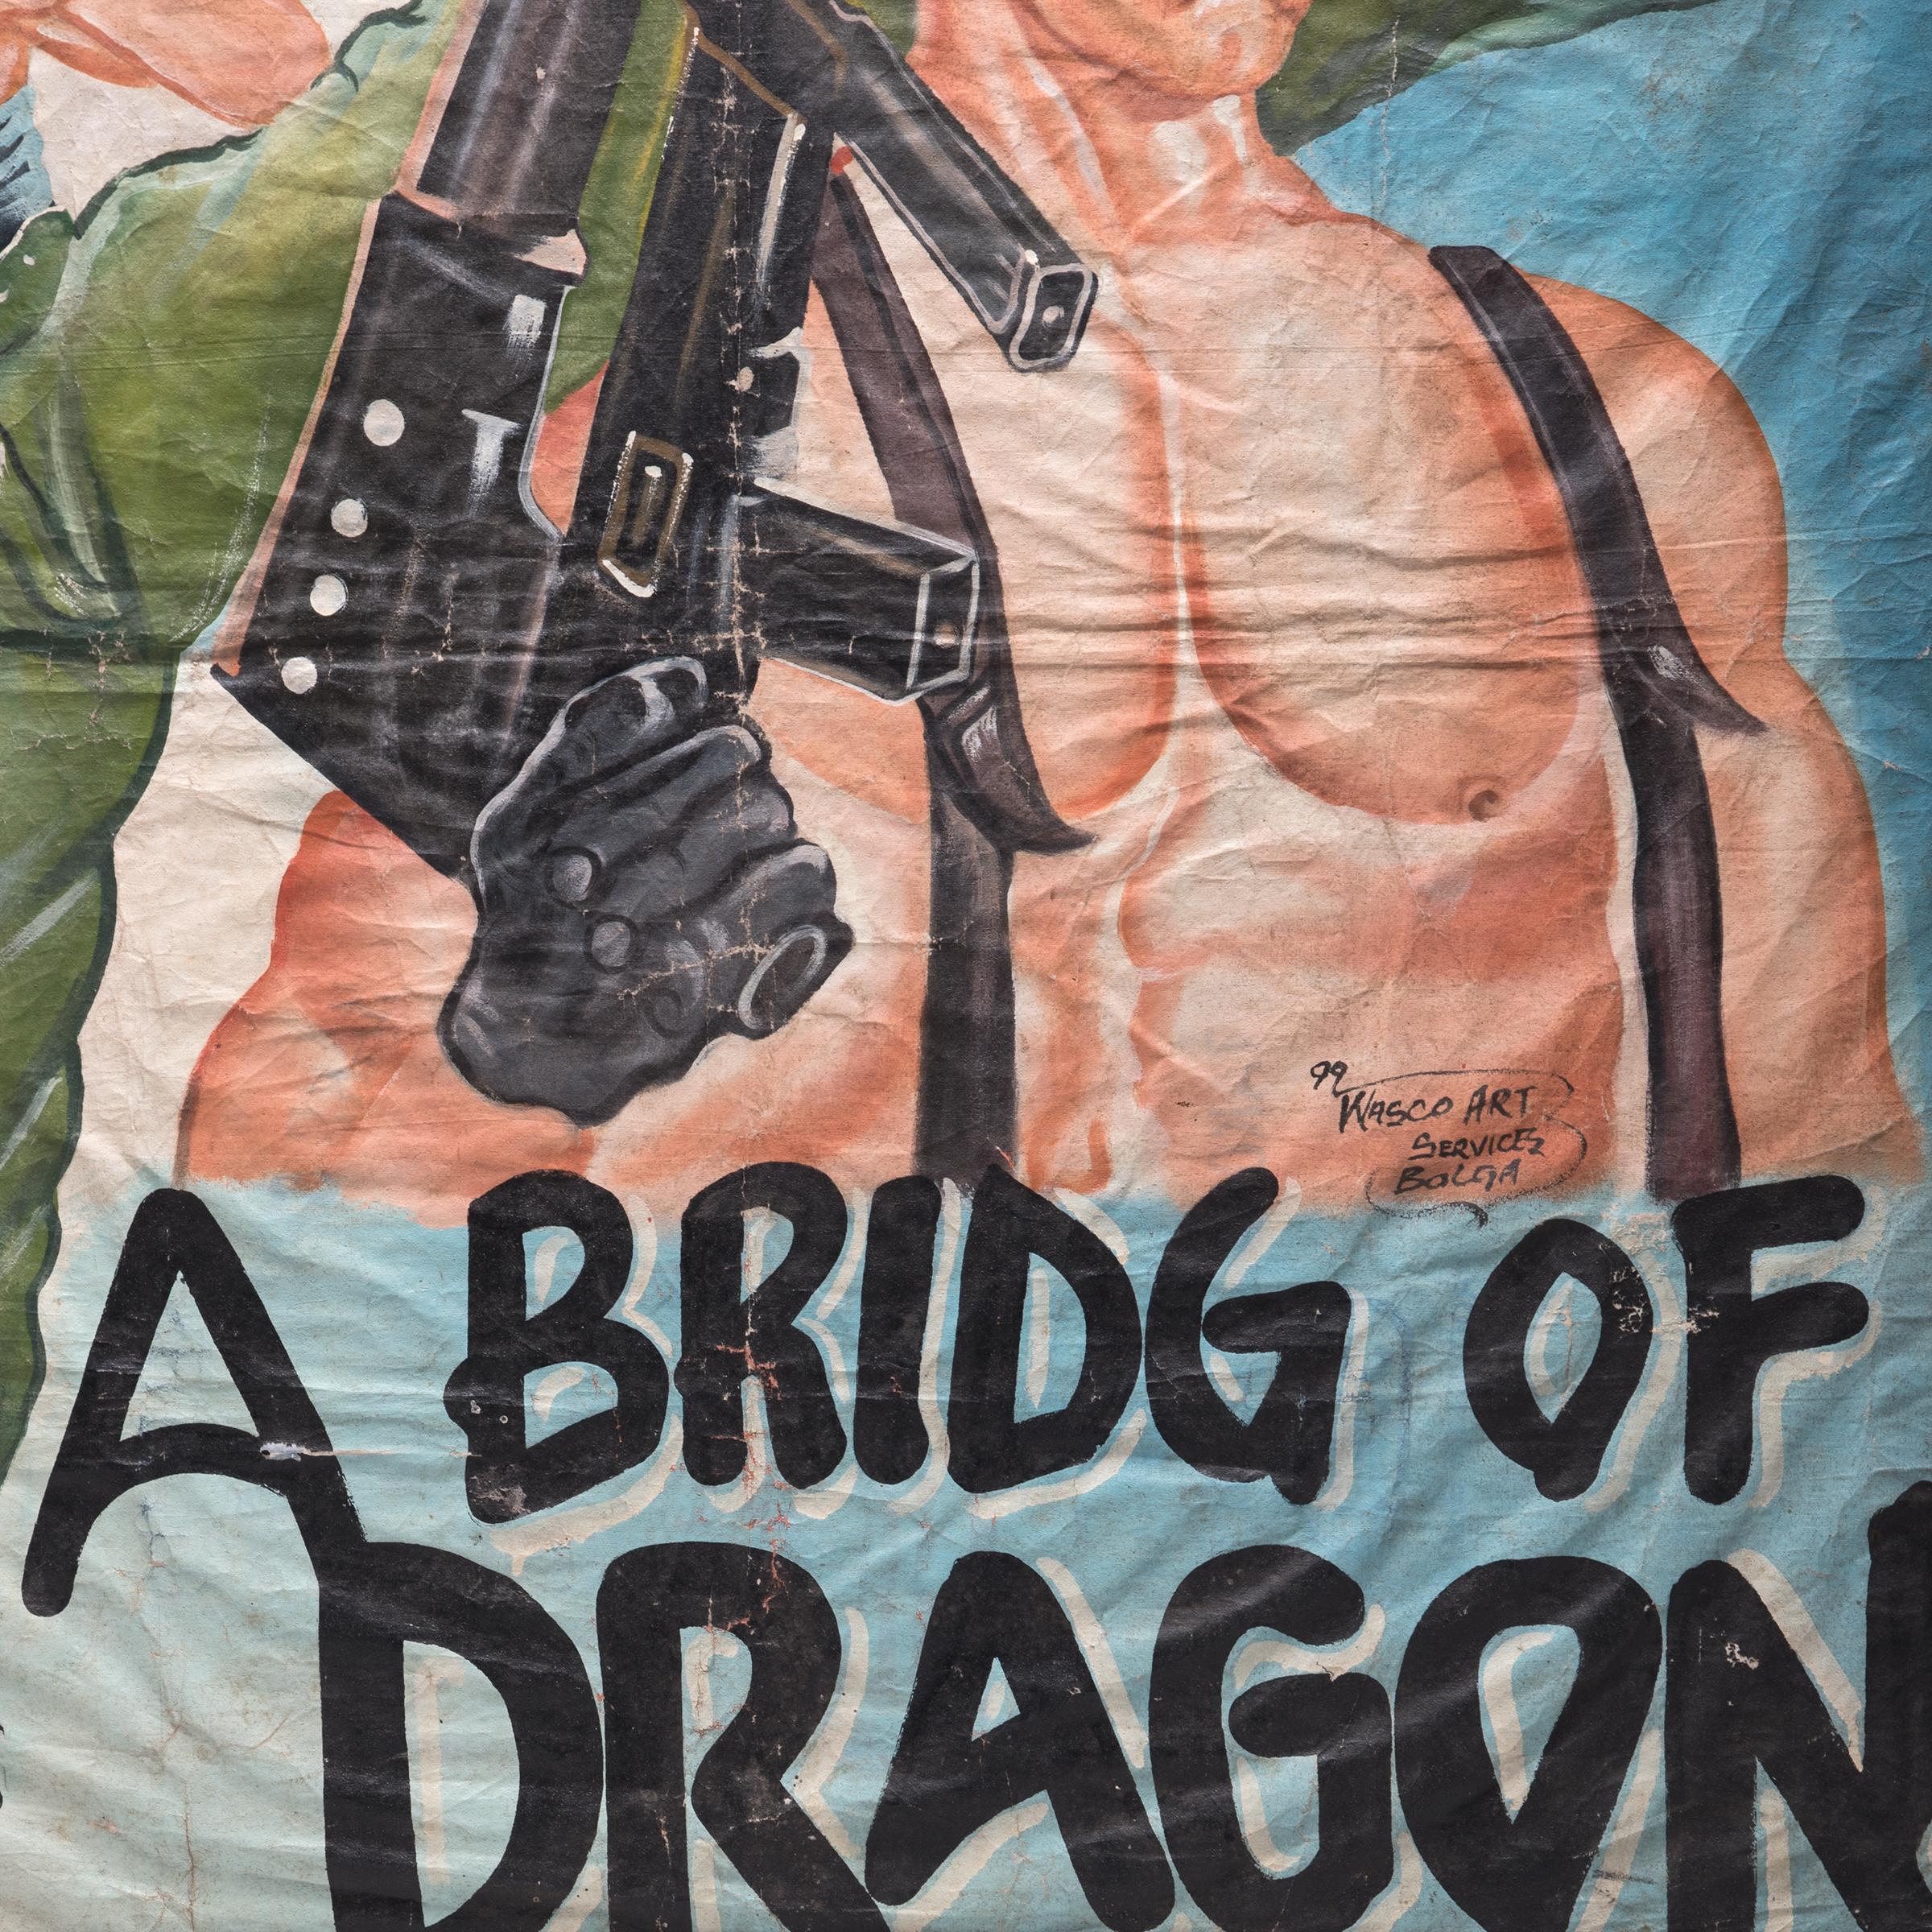 Avec Dolph Lundgren en vedette, Bridge of Dragons est un film d'action et de romance de la fin des années 90. Le succès international du film est évident dans cette publicité peinte à la main au Ghana. Souvent dans l'impossibilité d'importer des